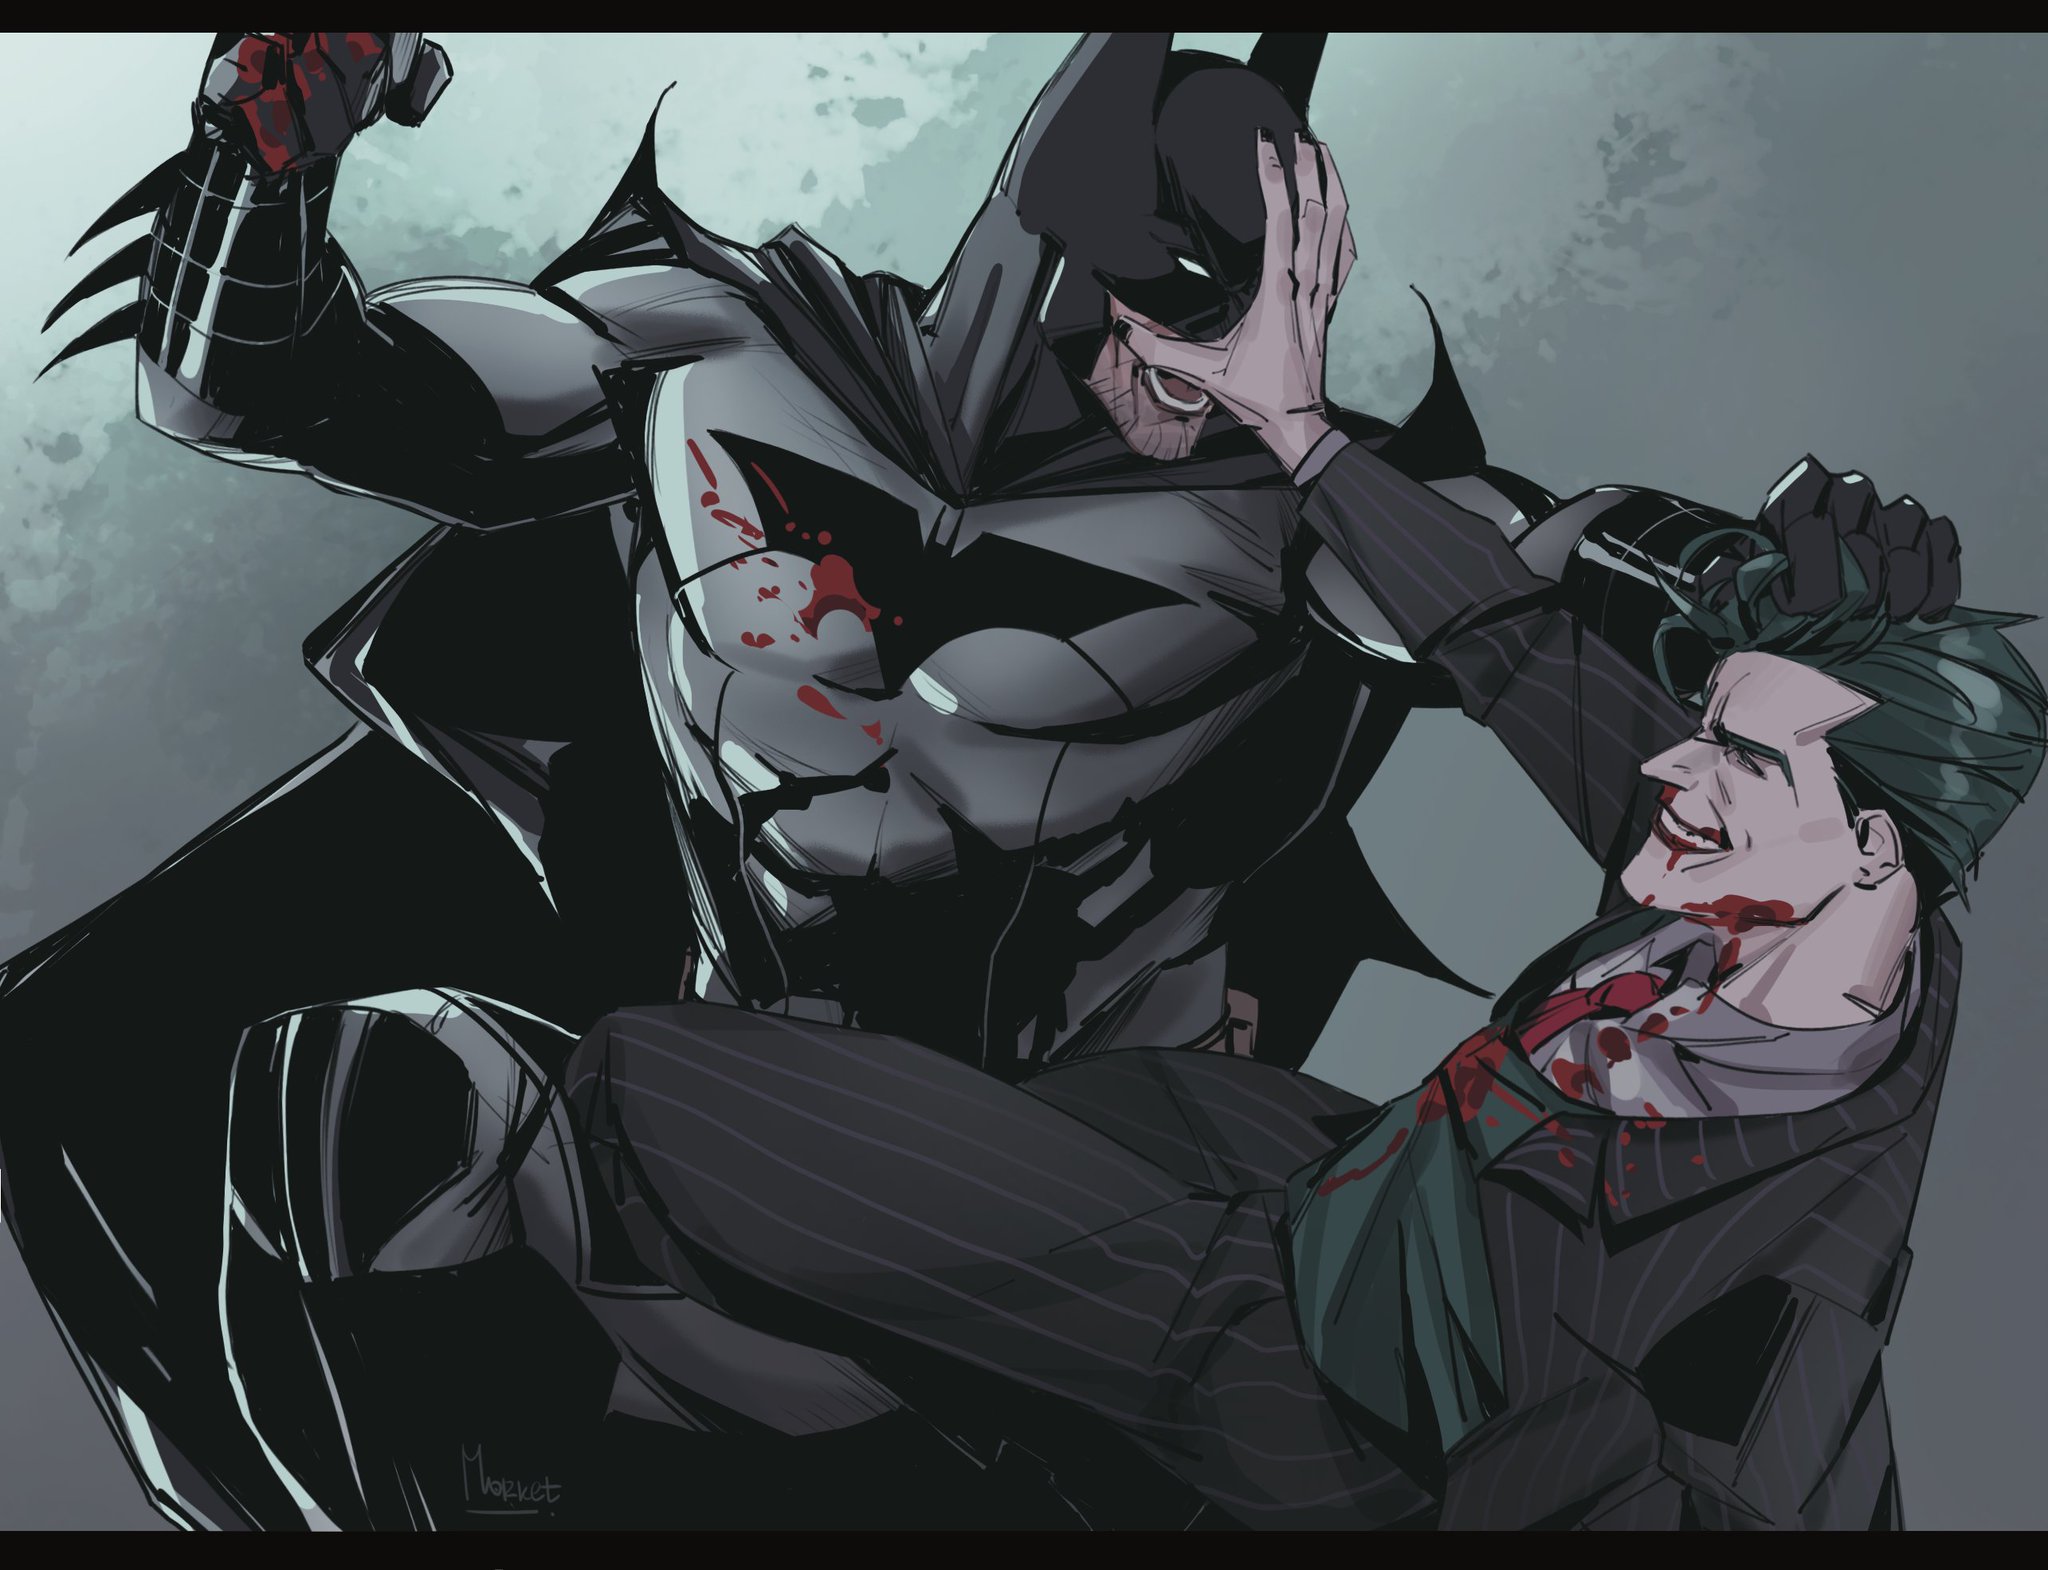 “Their war

#batman #joker #dc” .